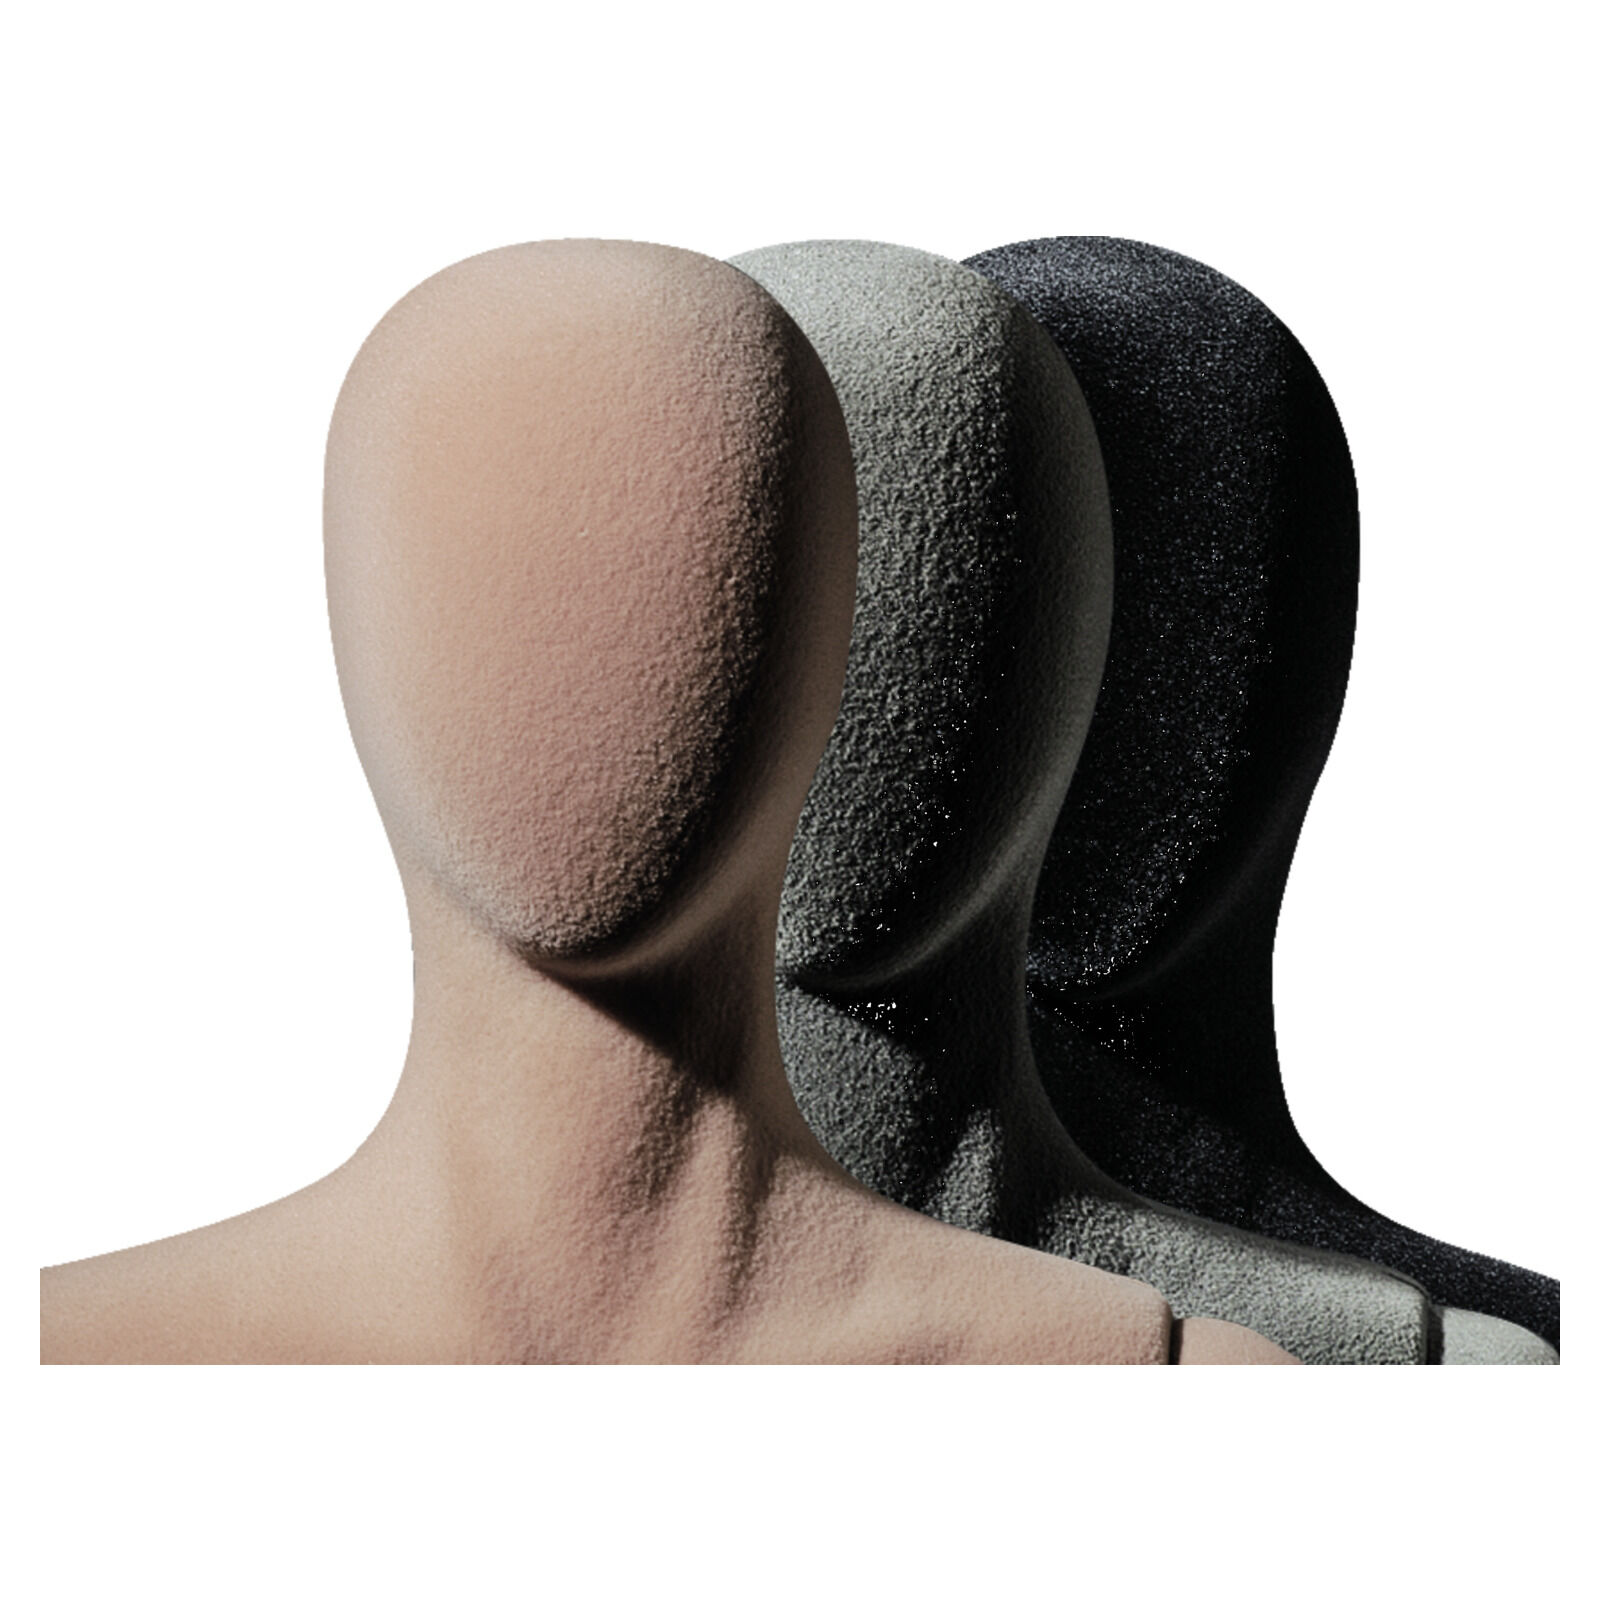 PolyStar MAN -flexibel mit abstraktem Kopf Bild 2